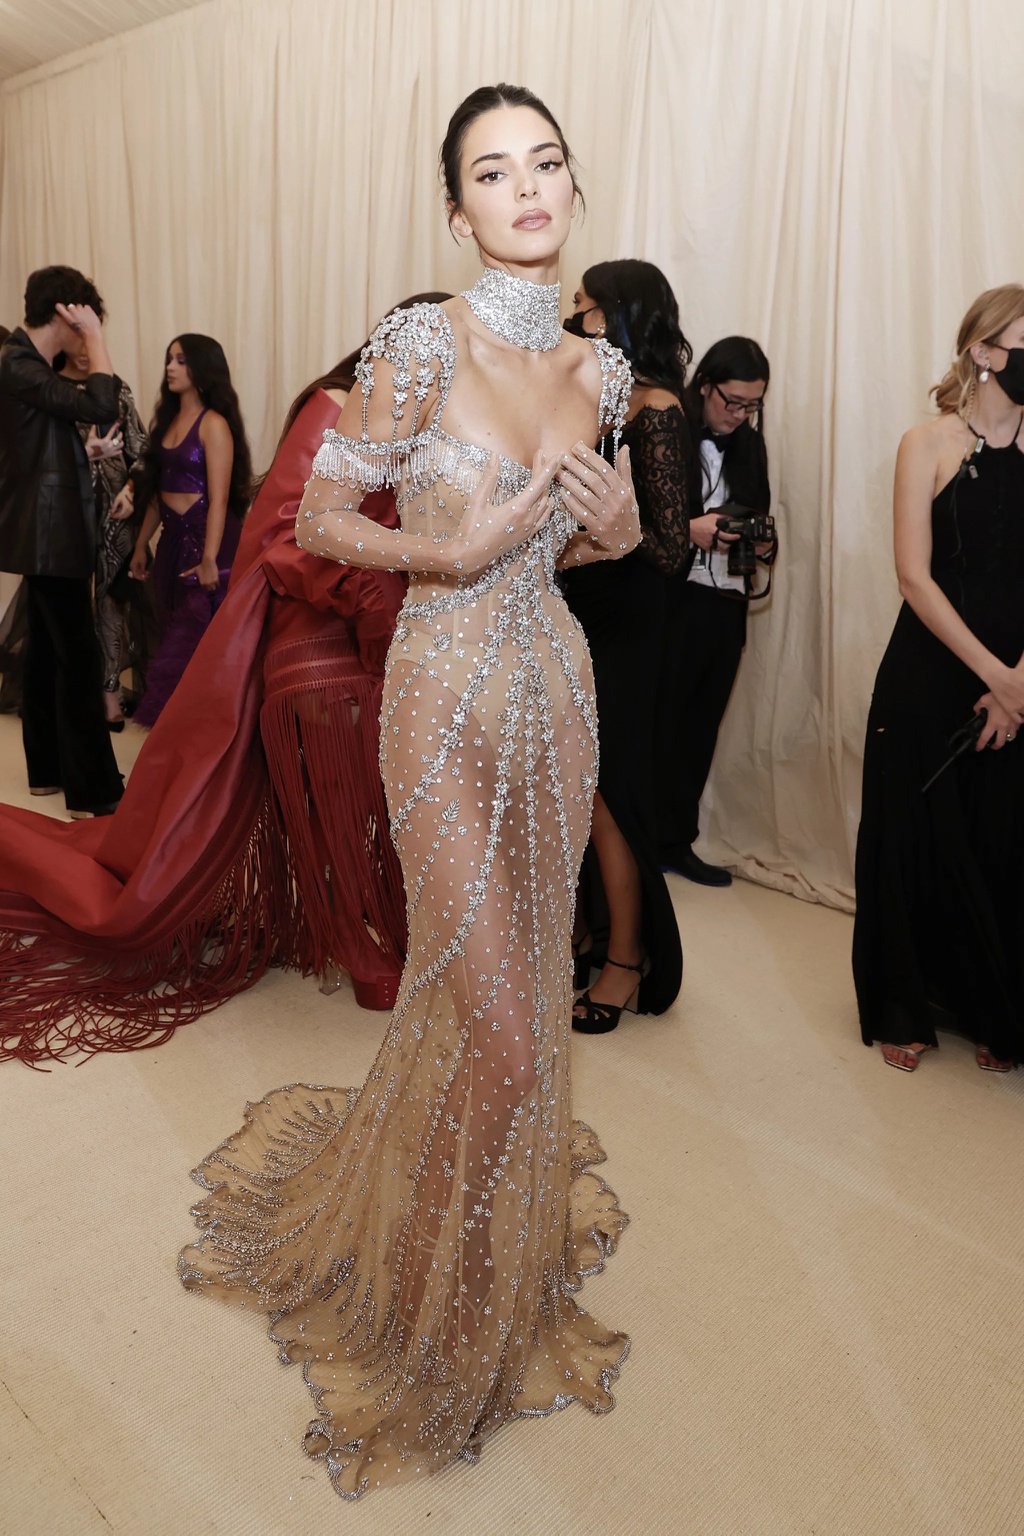 Xôn xao chiếc váy giá 9 chữ số của Đoàn Di Băng “nhái” theo Kendall Jenner, chính chủ nói gì?